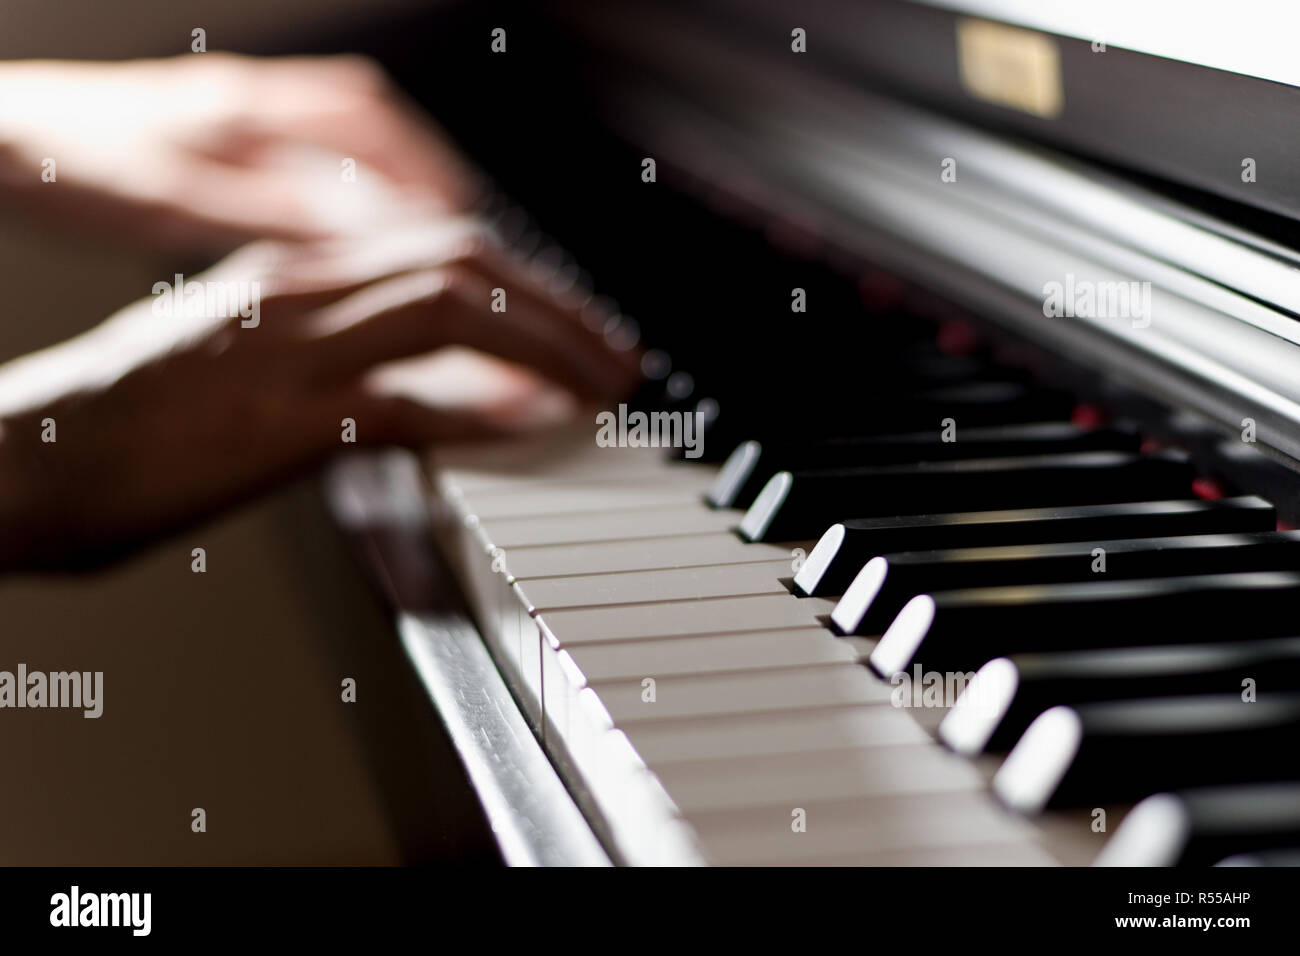 Brillant classique clavier de piano avec le pianiste dvd mains jouant en arrière-plan Banque D'Images